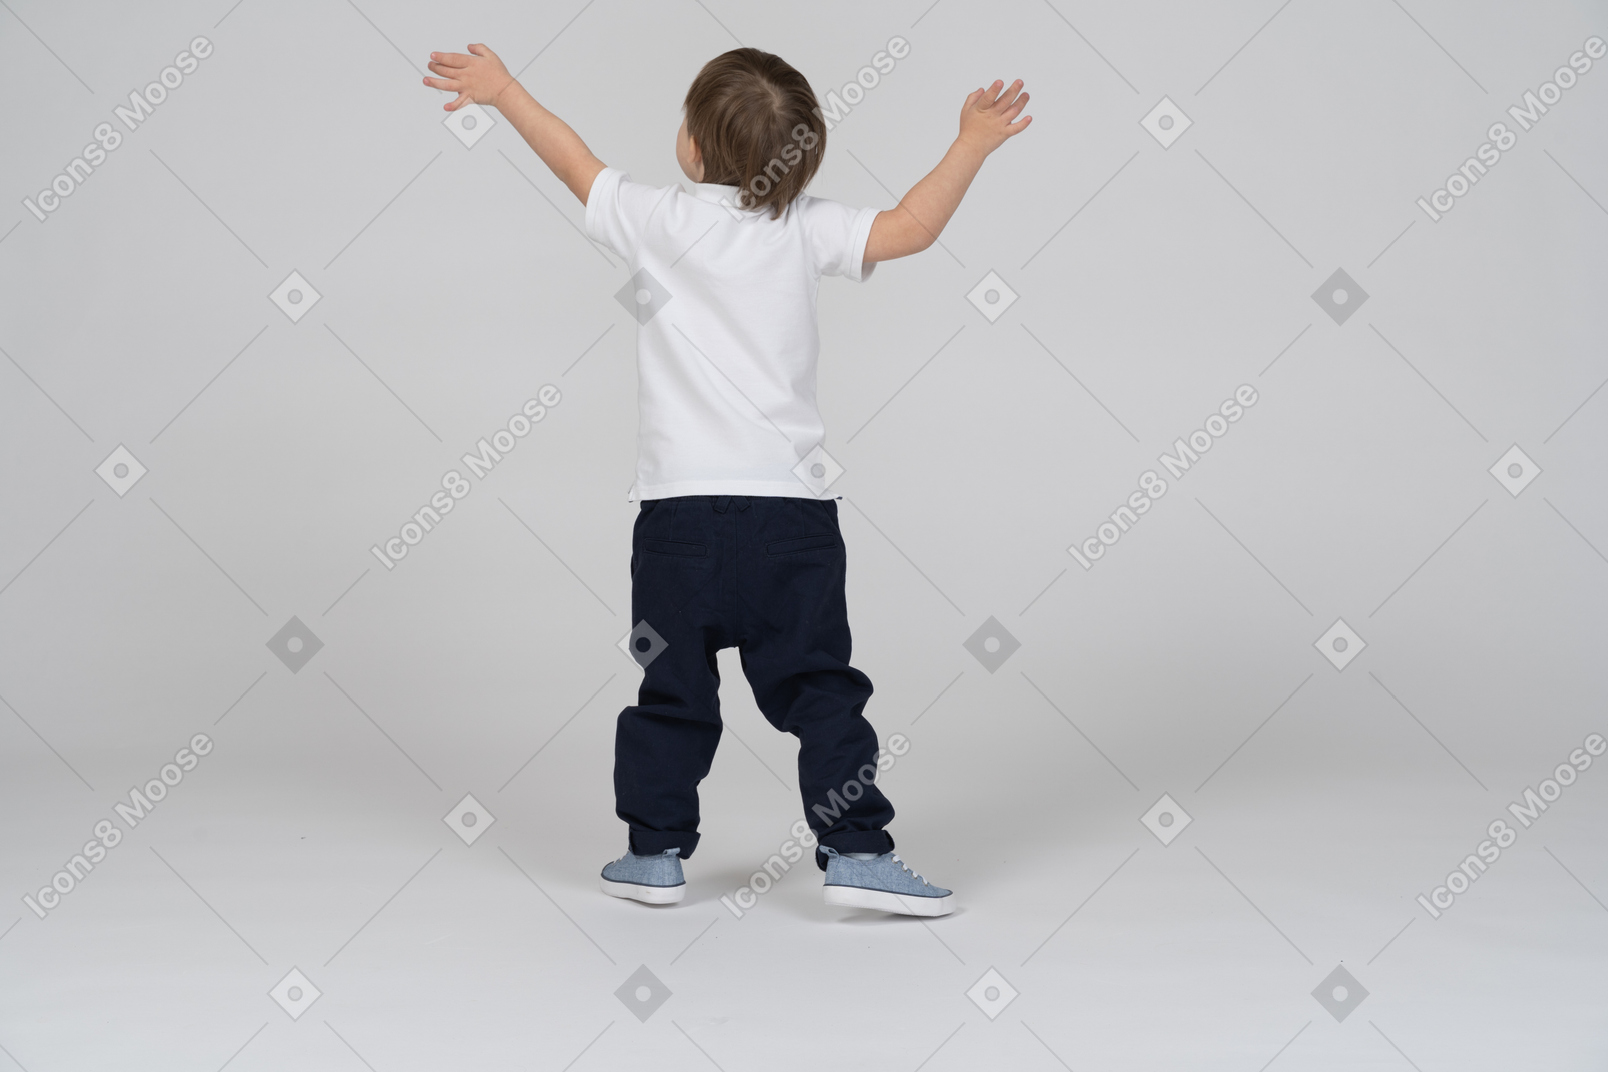 Vista traseira de um menino de pé com os braços levantados